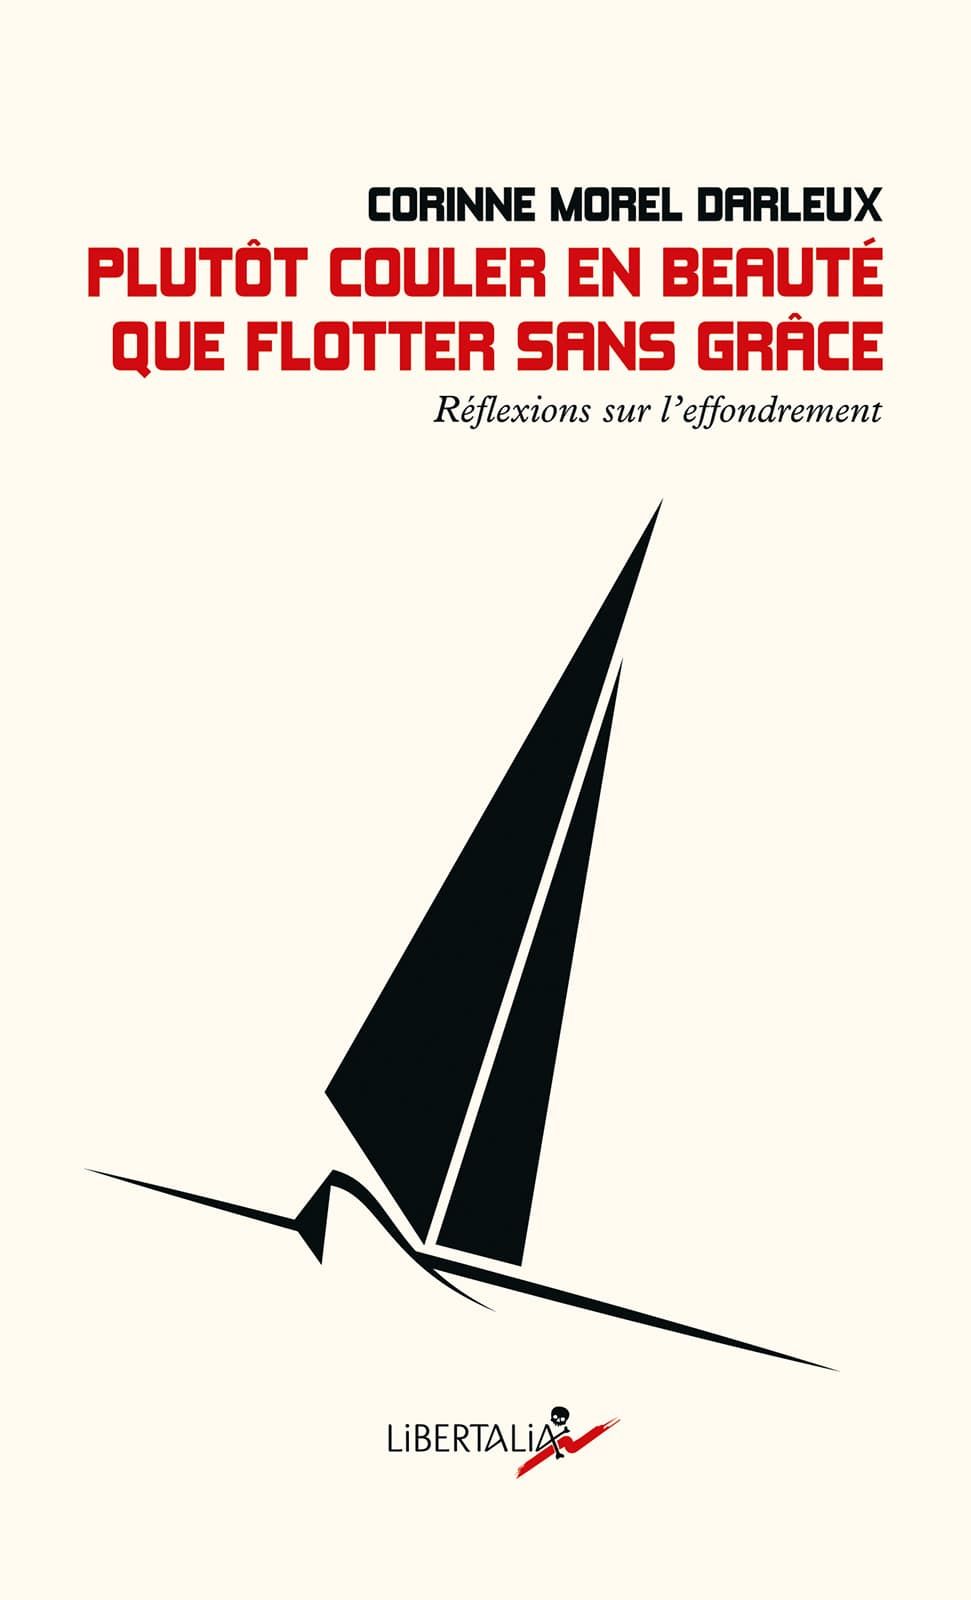 Plutôt couler en beauté que flotter sans grâce (French language, 2019, Libertalia)